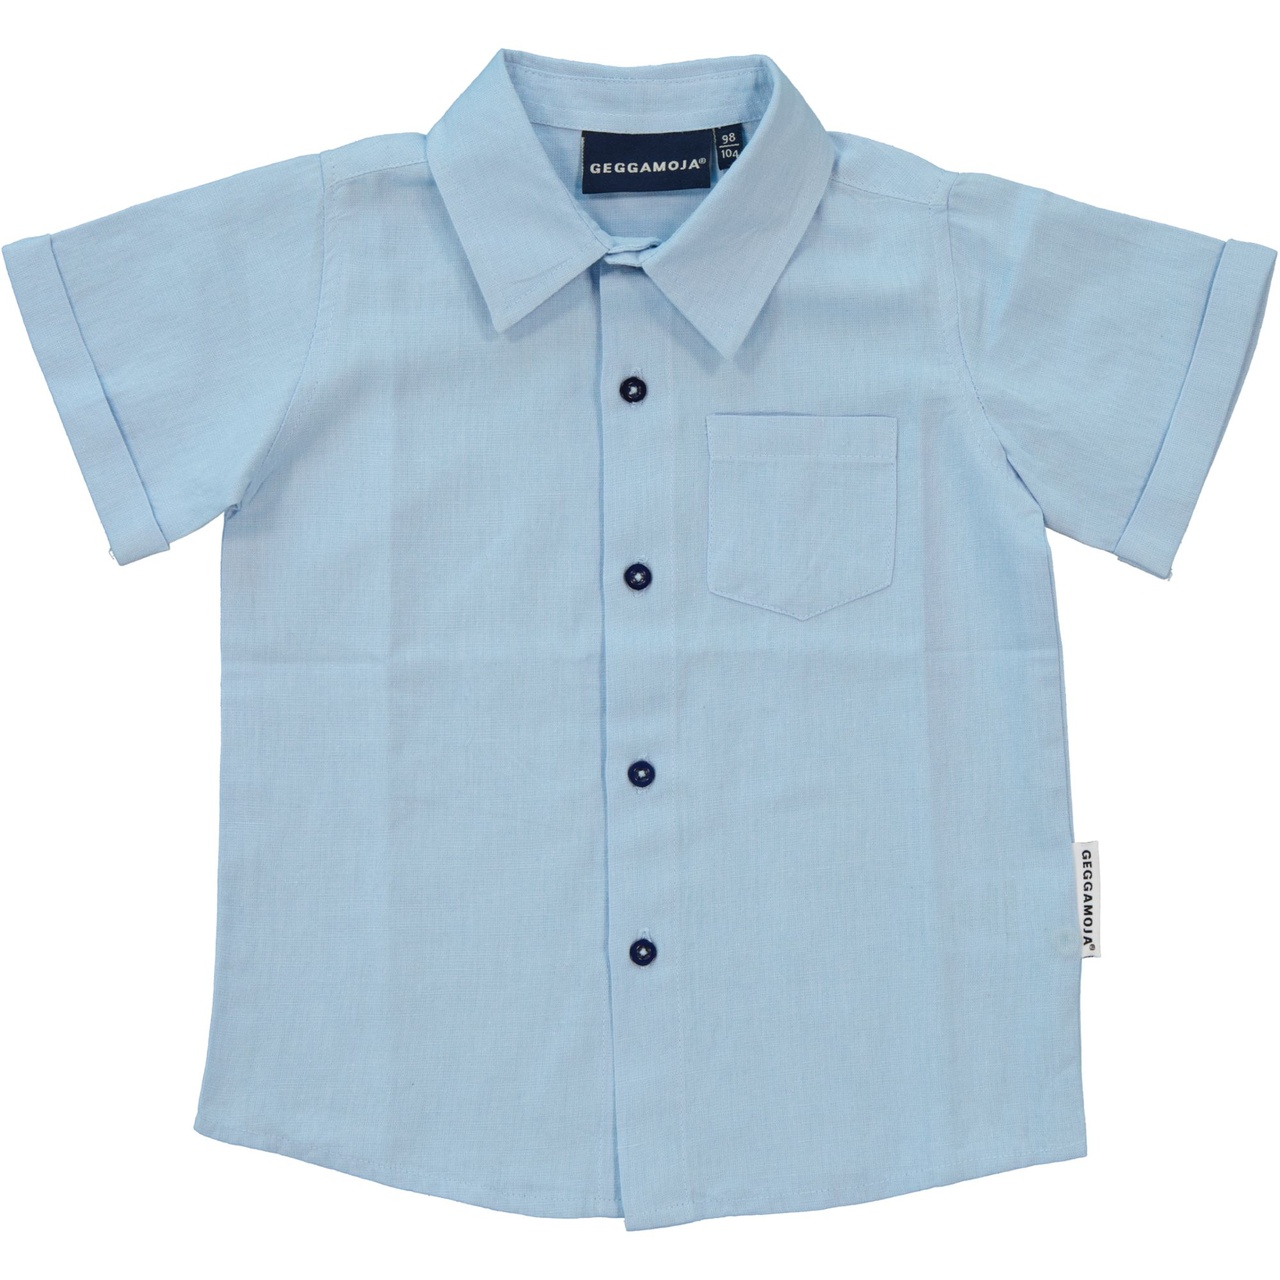 Linnen Shirt S.S Light blue 74/80